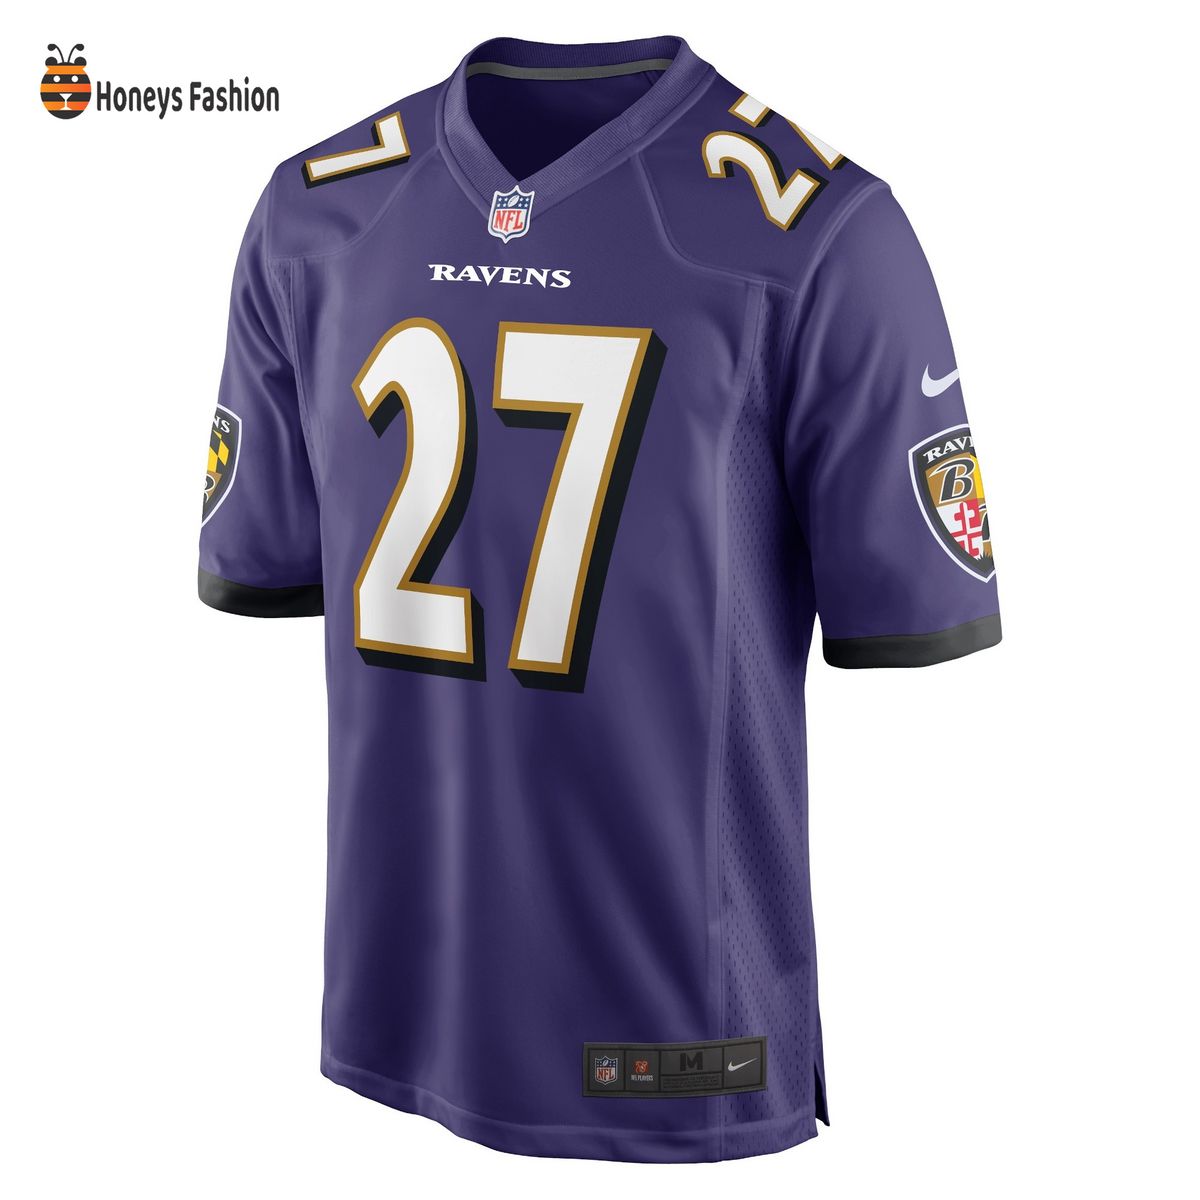 J.K. Dobbins Baltimore Ravens Nike Game Purple Jersey